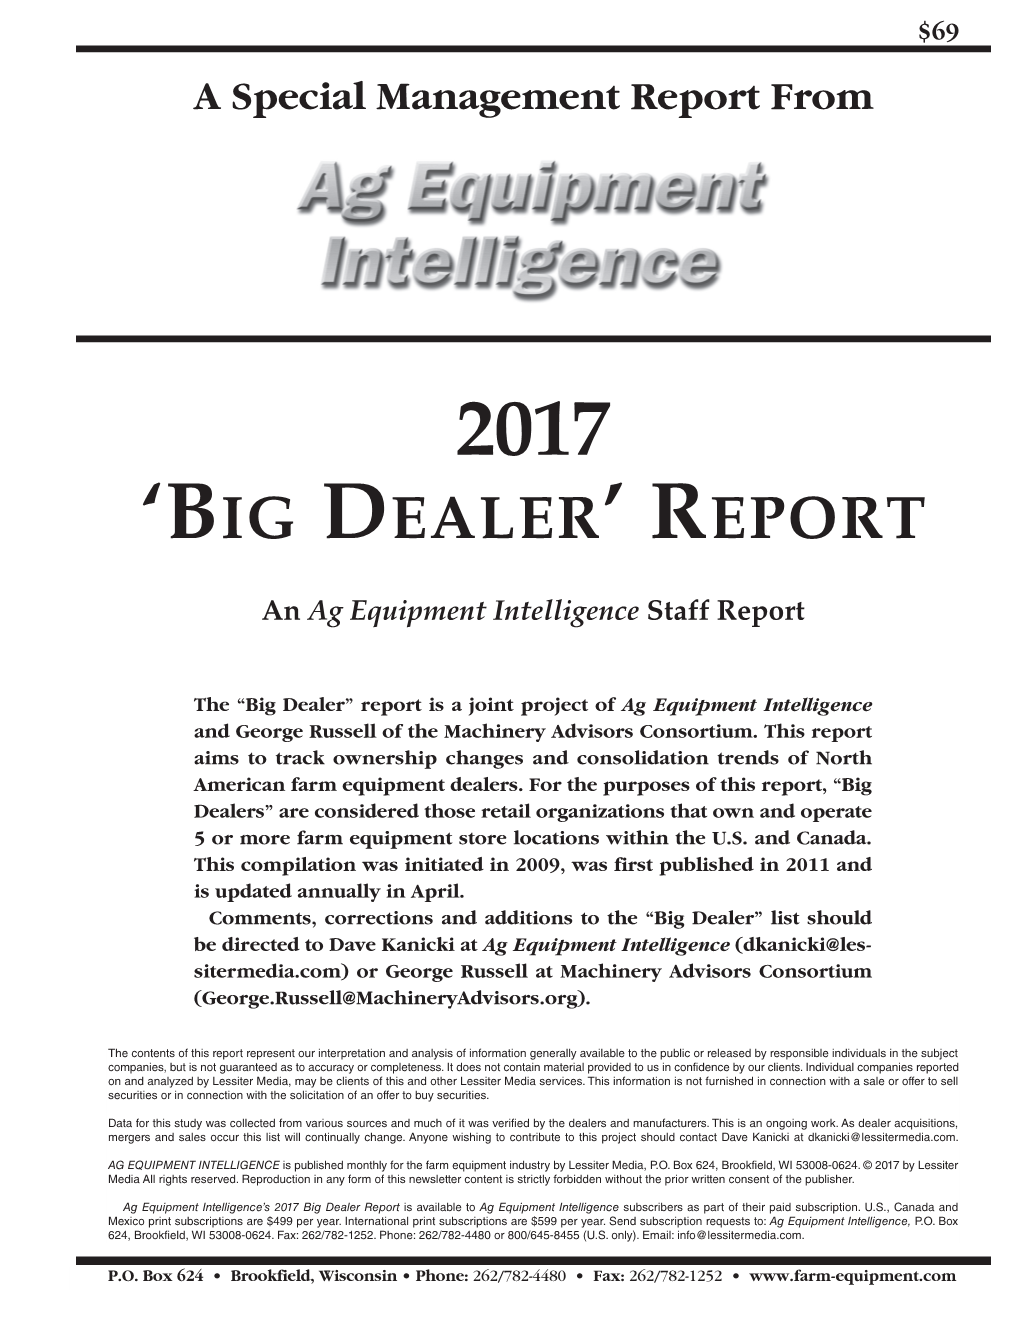 'Big Dealer' Report